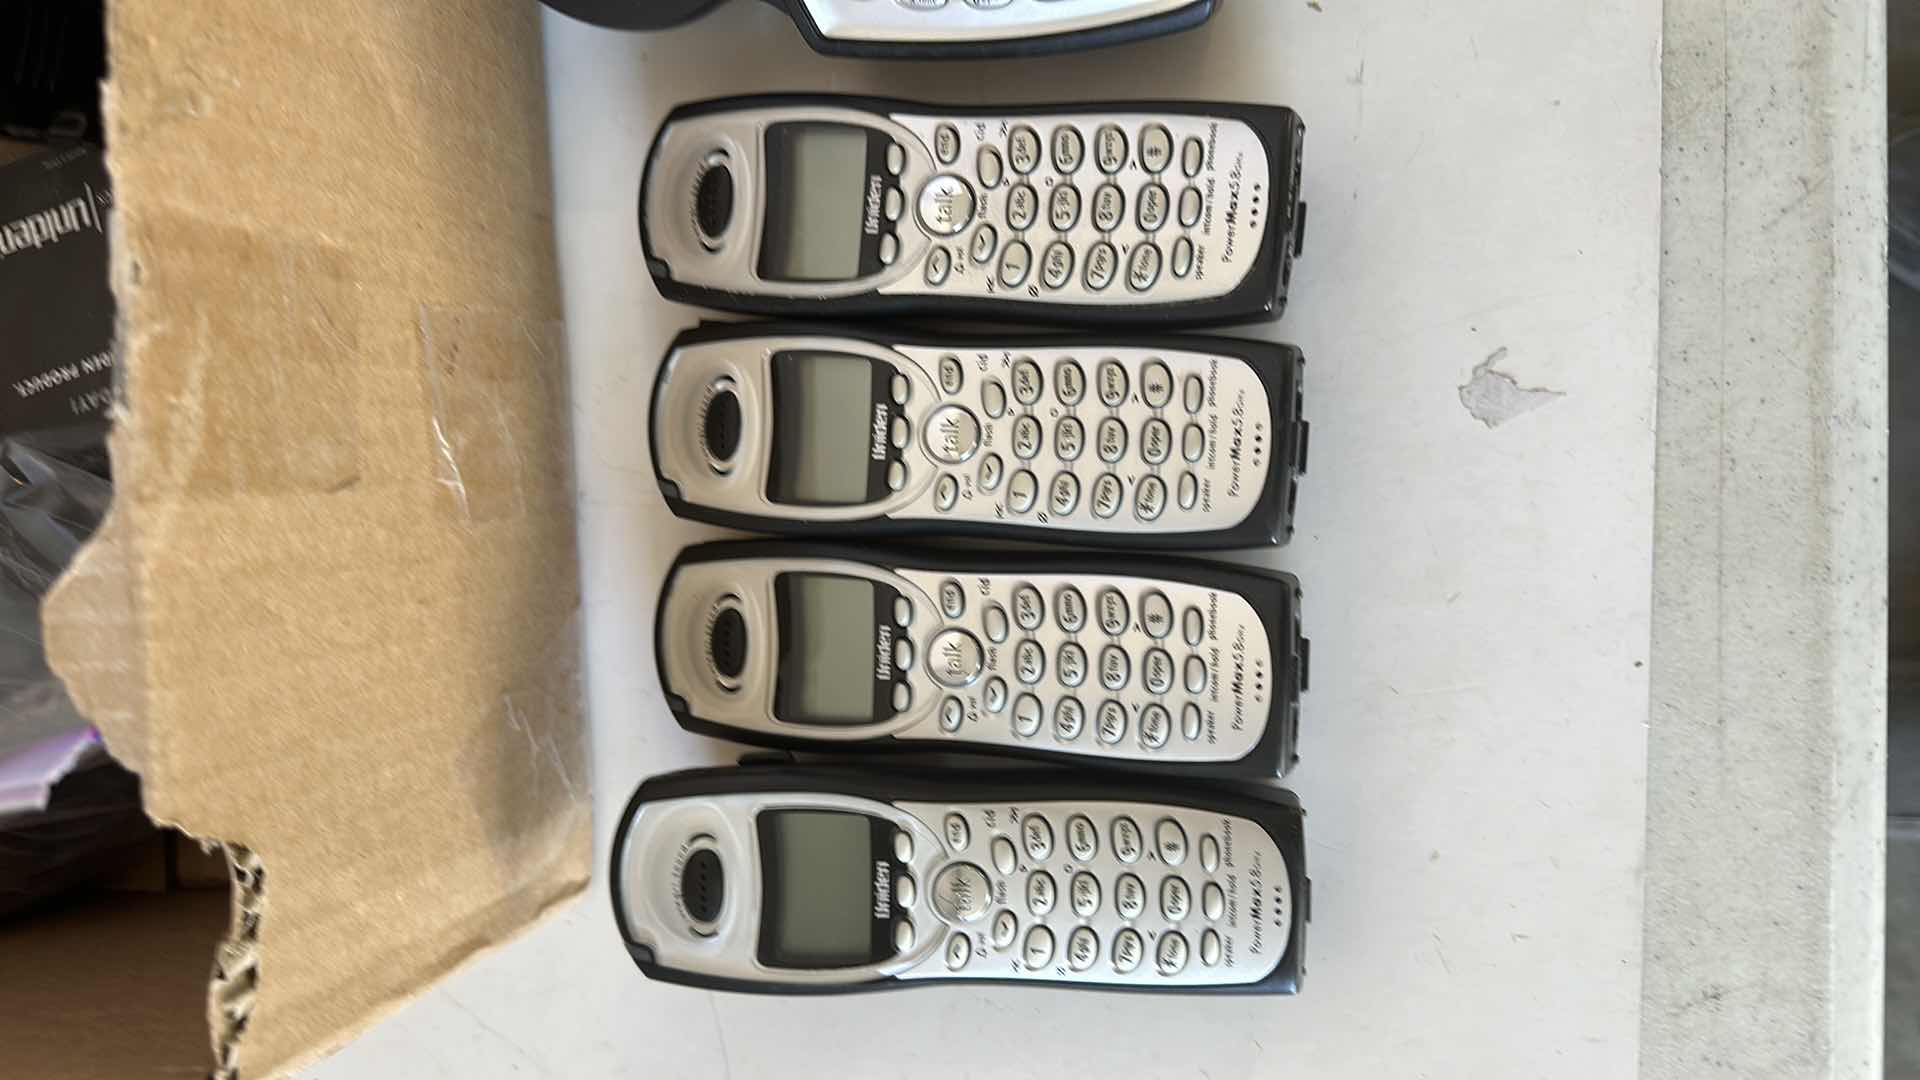 Photo 2 of UNIDENTIFIED PHONES